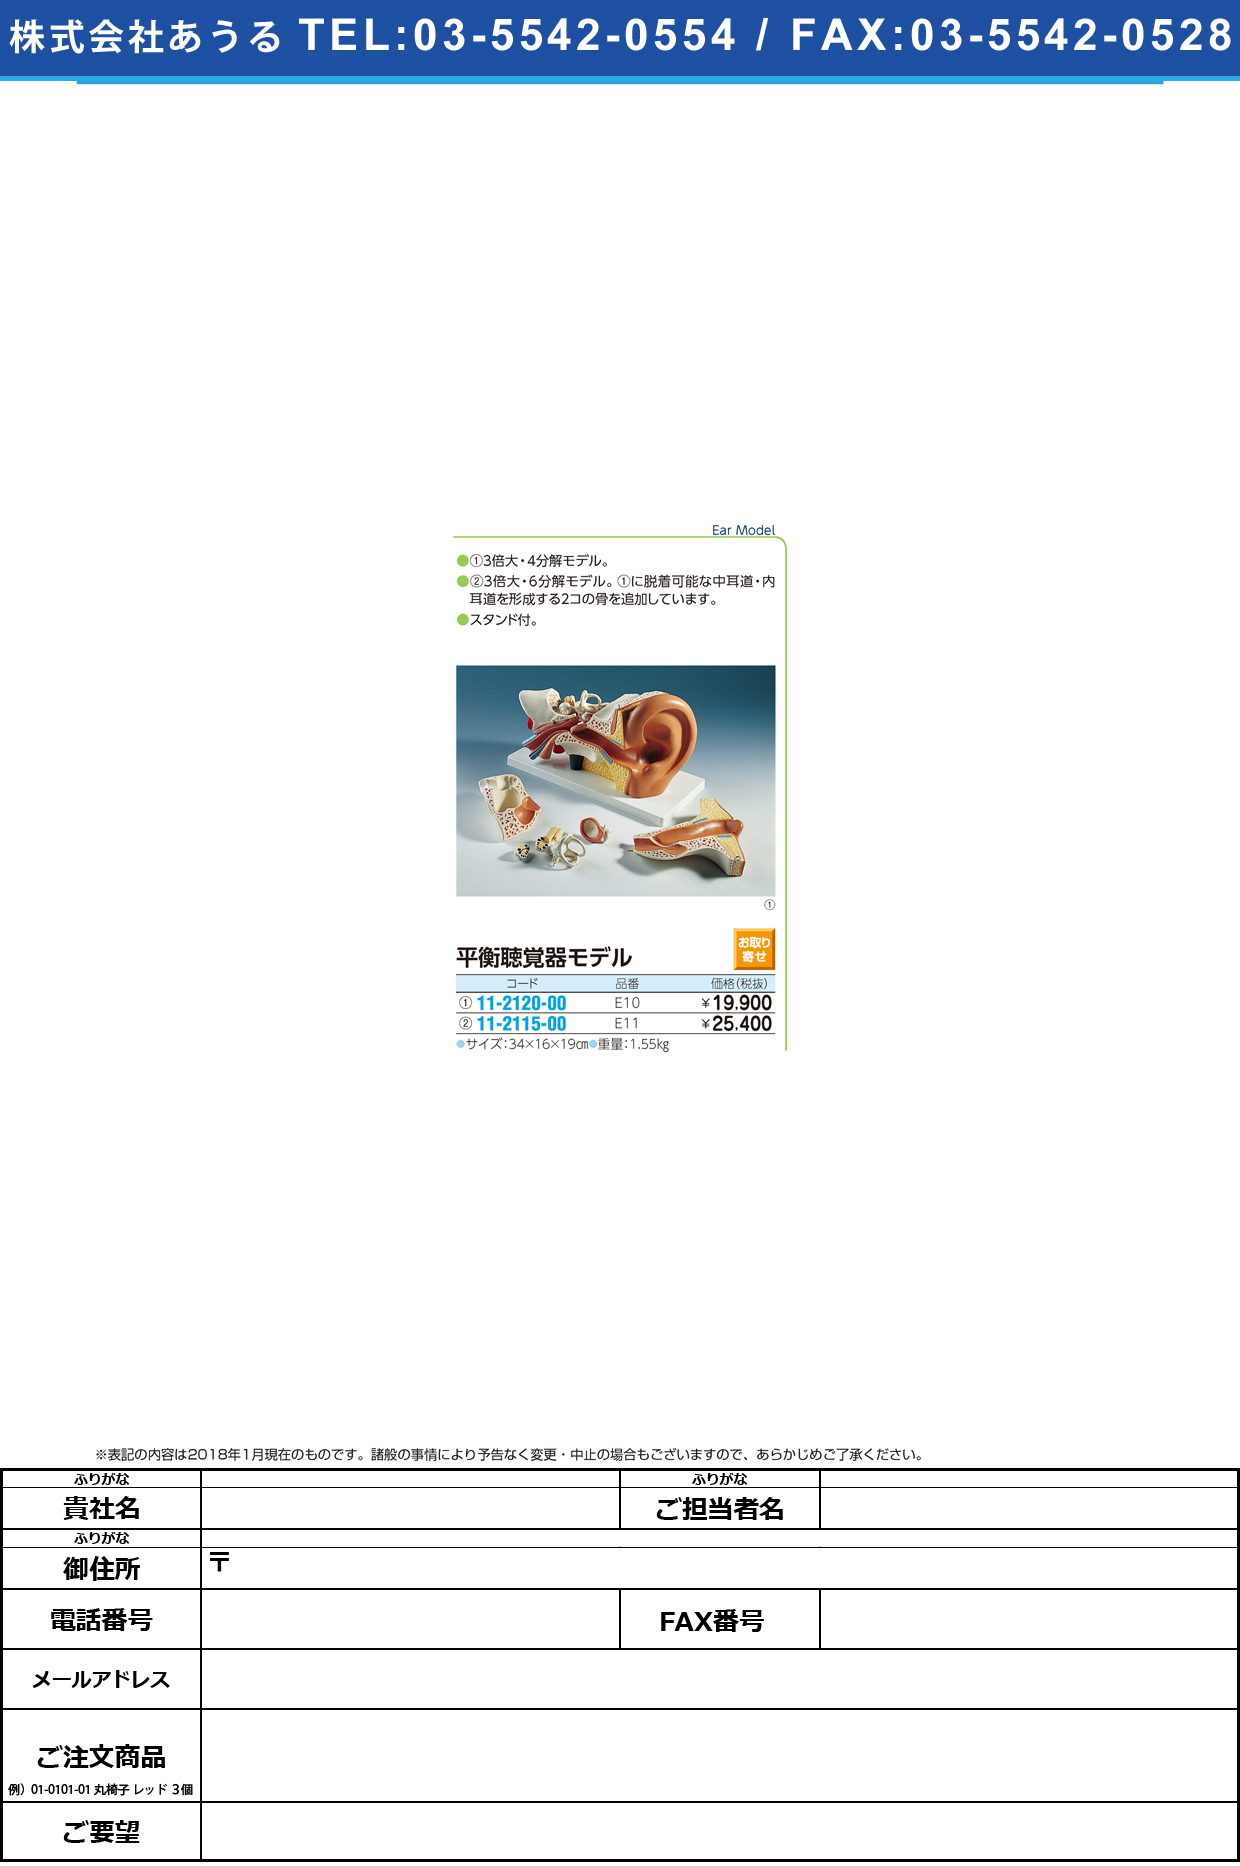 (11-2120-00)平衡聴覚器モデル（標準型） E10(34X16X19CM) ﾍｲｺｳﾁｮｳｶｸｷﾓﾃﾞﾙ(ﾋｮｳｼﾞ(京都科学)【1台単位】【2019年カタログ商品】